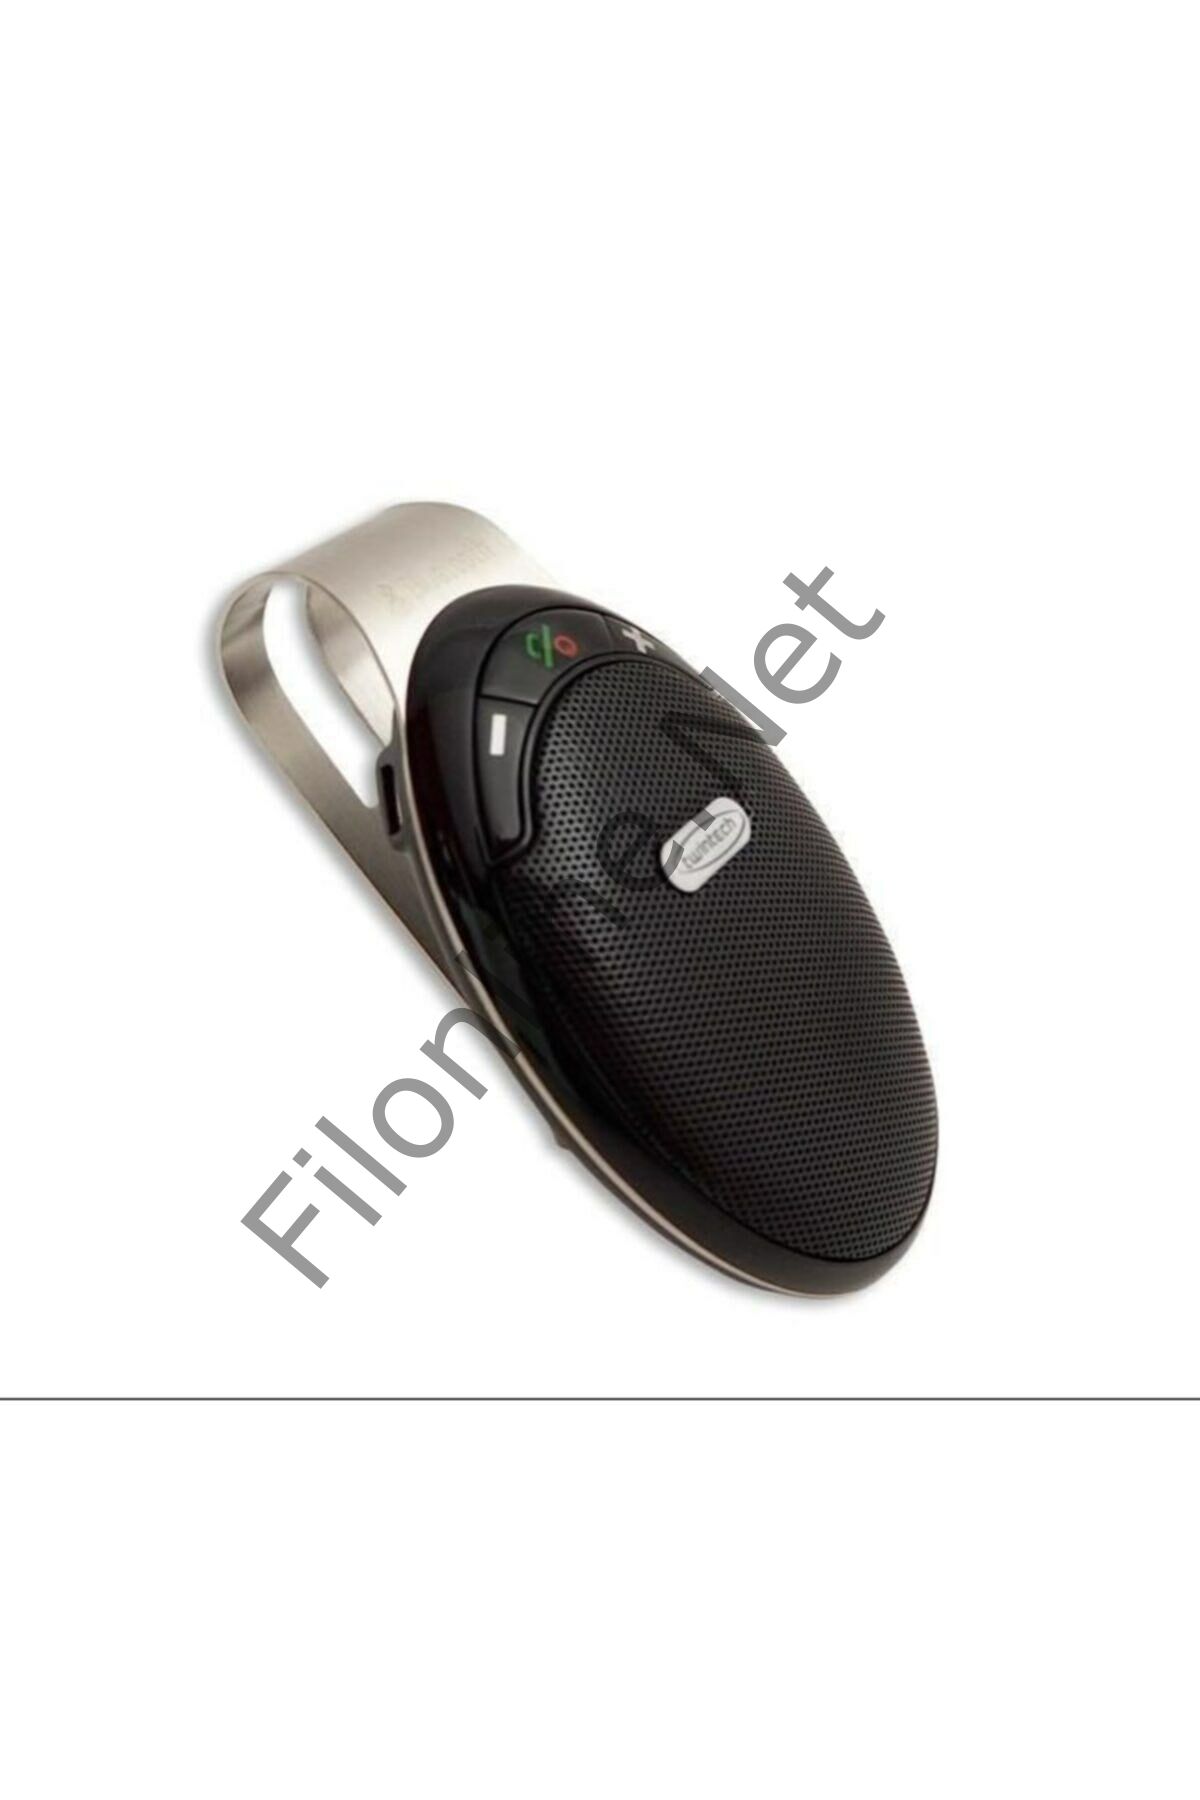 Fac-1311 Bluetooth Araç Kiti Sesli Komut Bluetooth V4.0 6 Ay Bekleme Süreli Araç Kiti